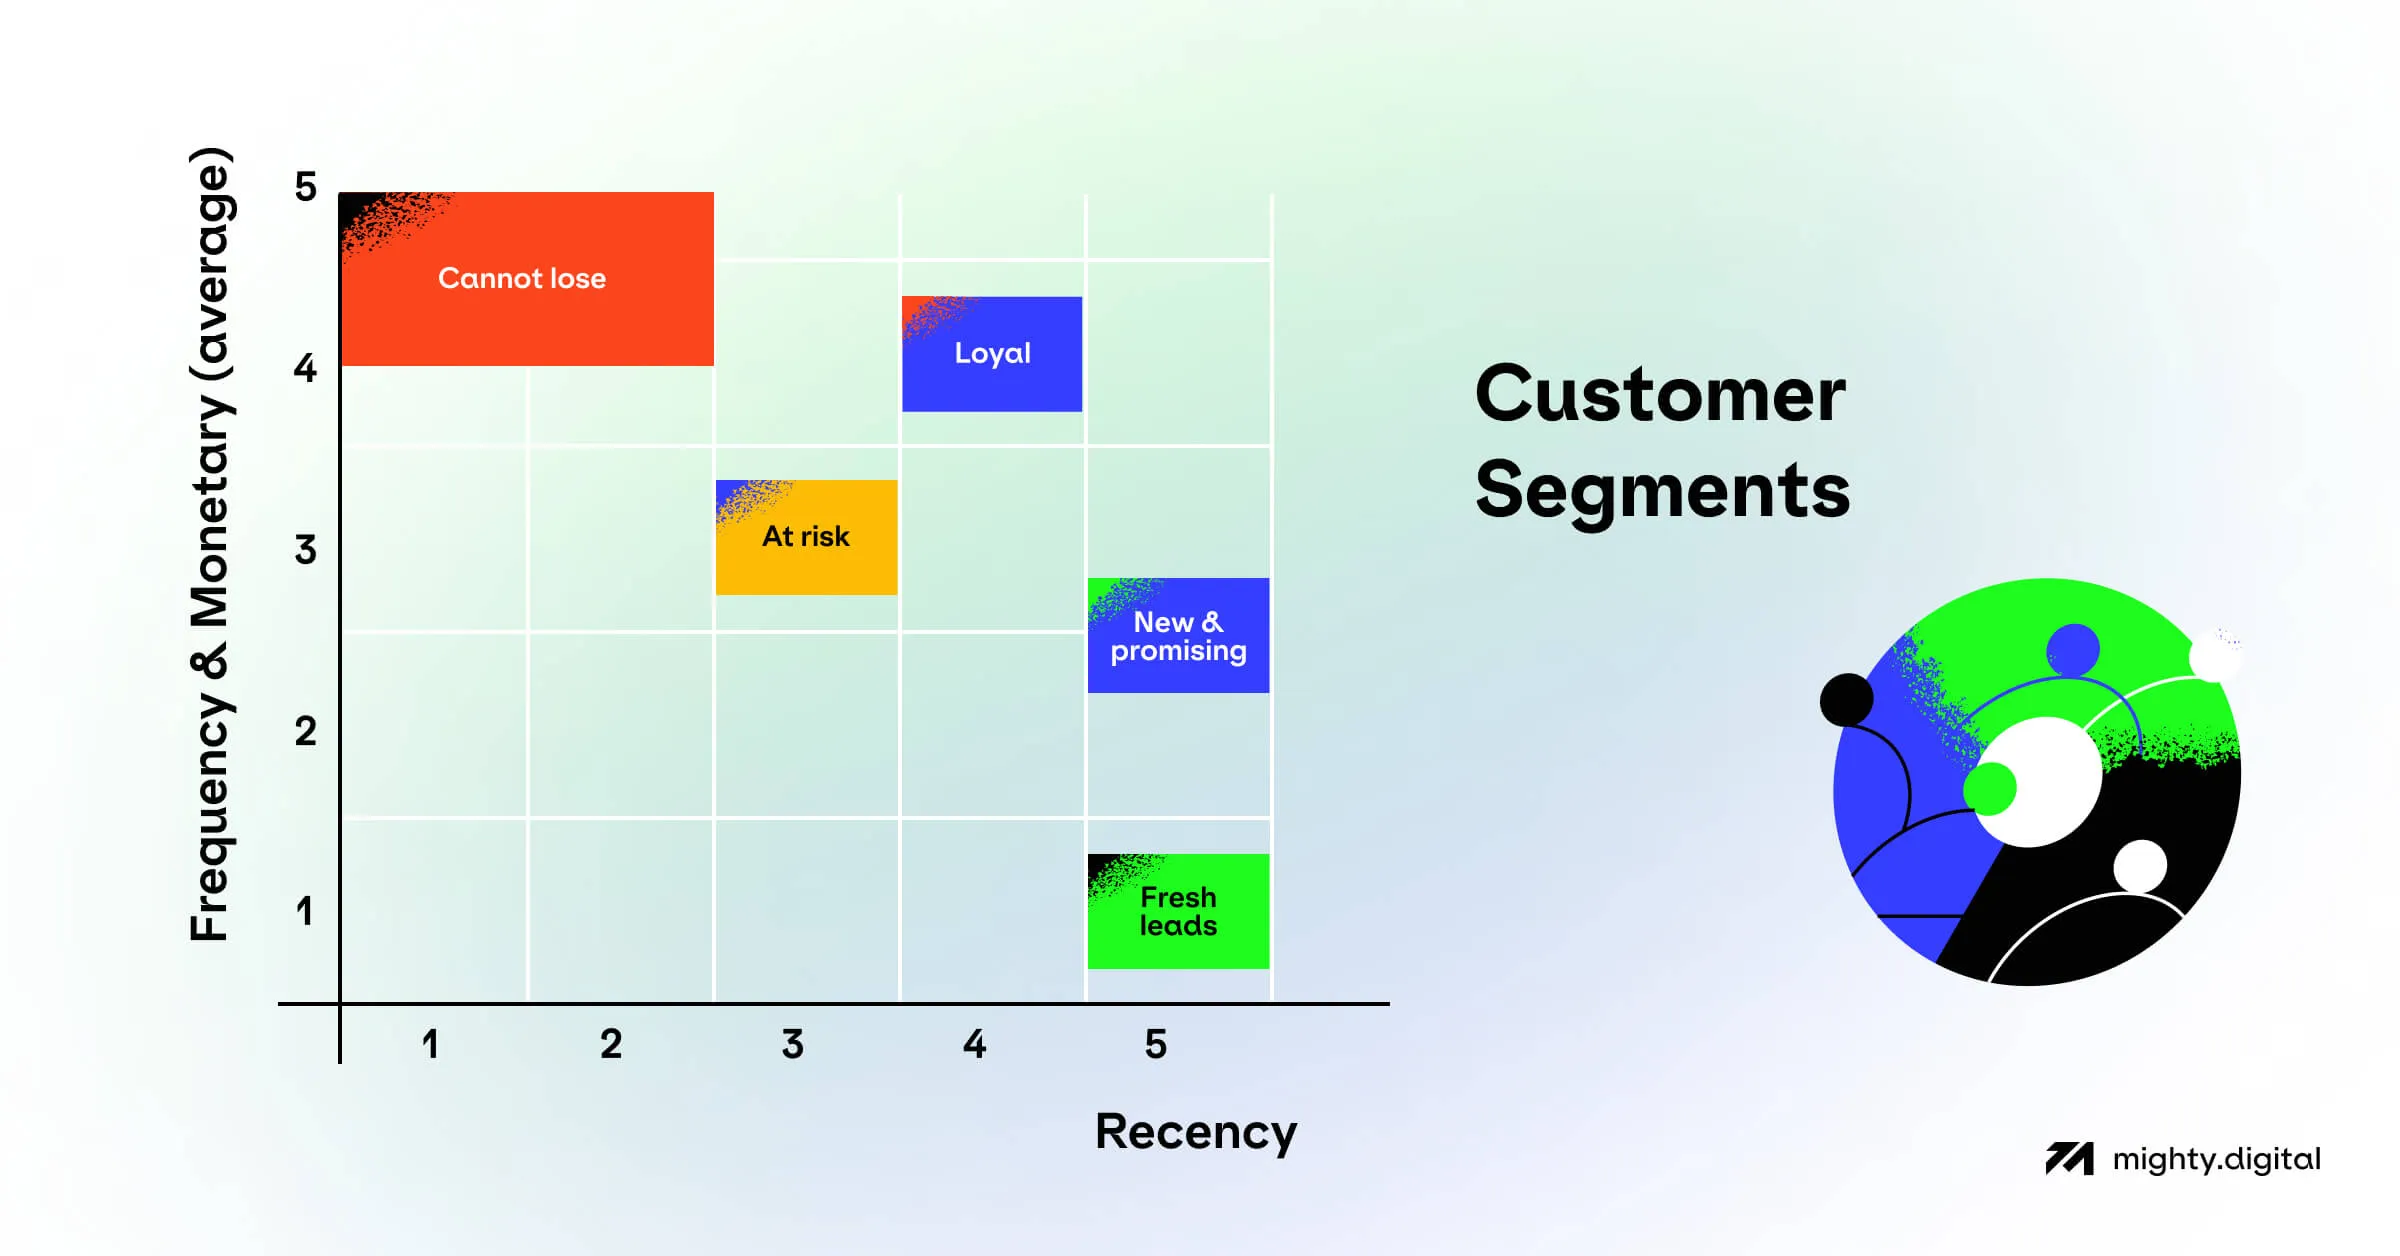 RFM score analysis — grouping and segmenting